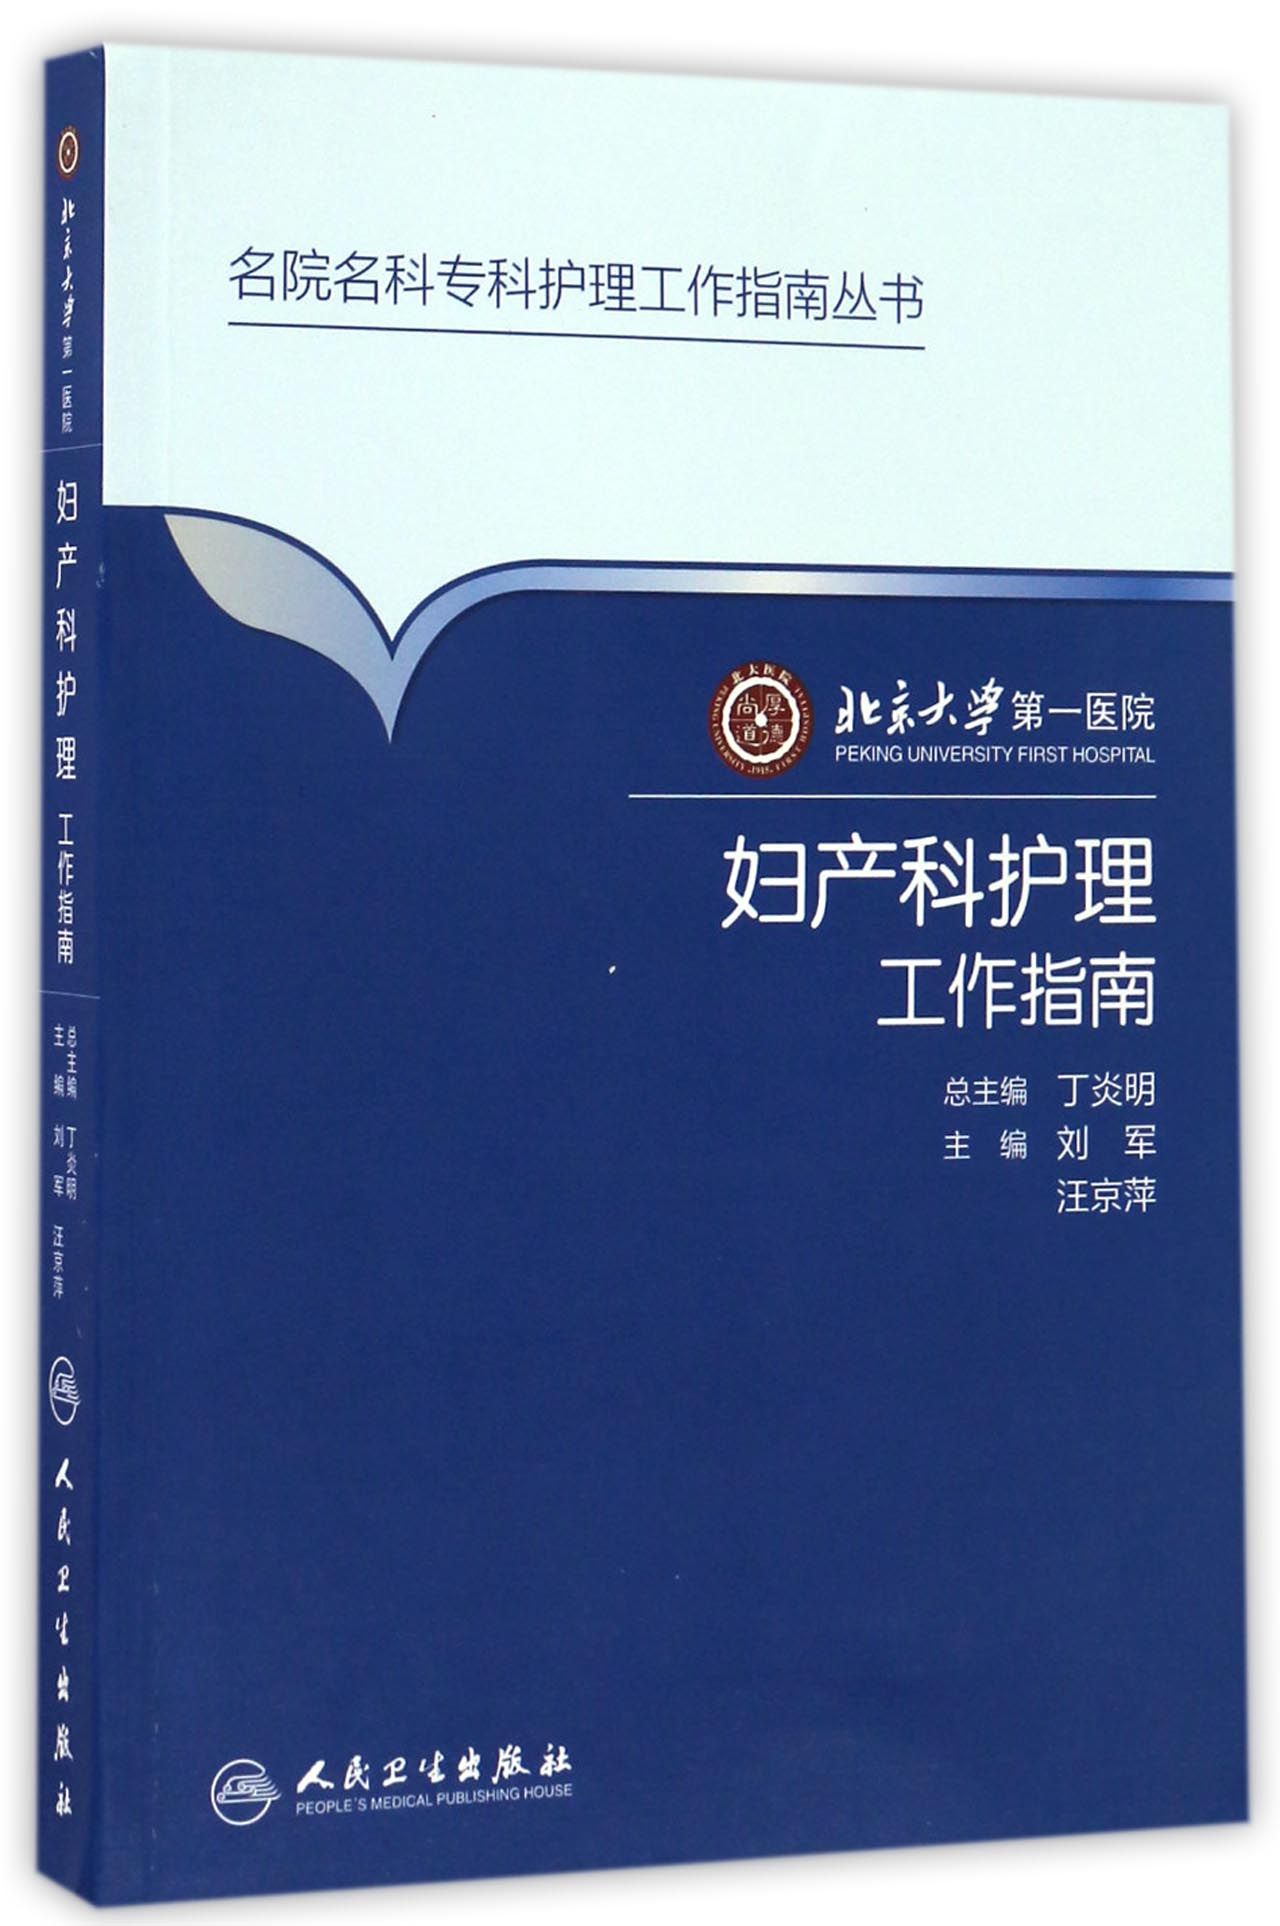 北京大学第一医院妇产科护理工作指南 mobi格式下载